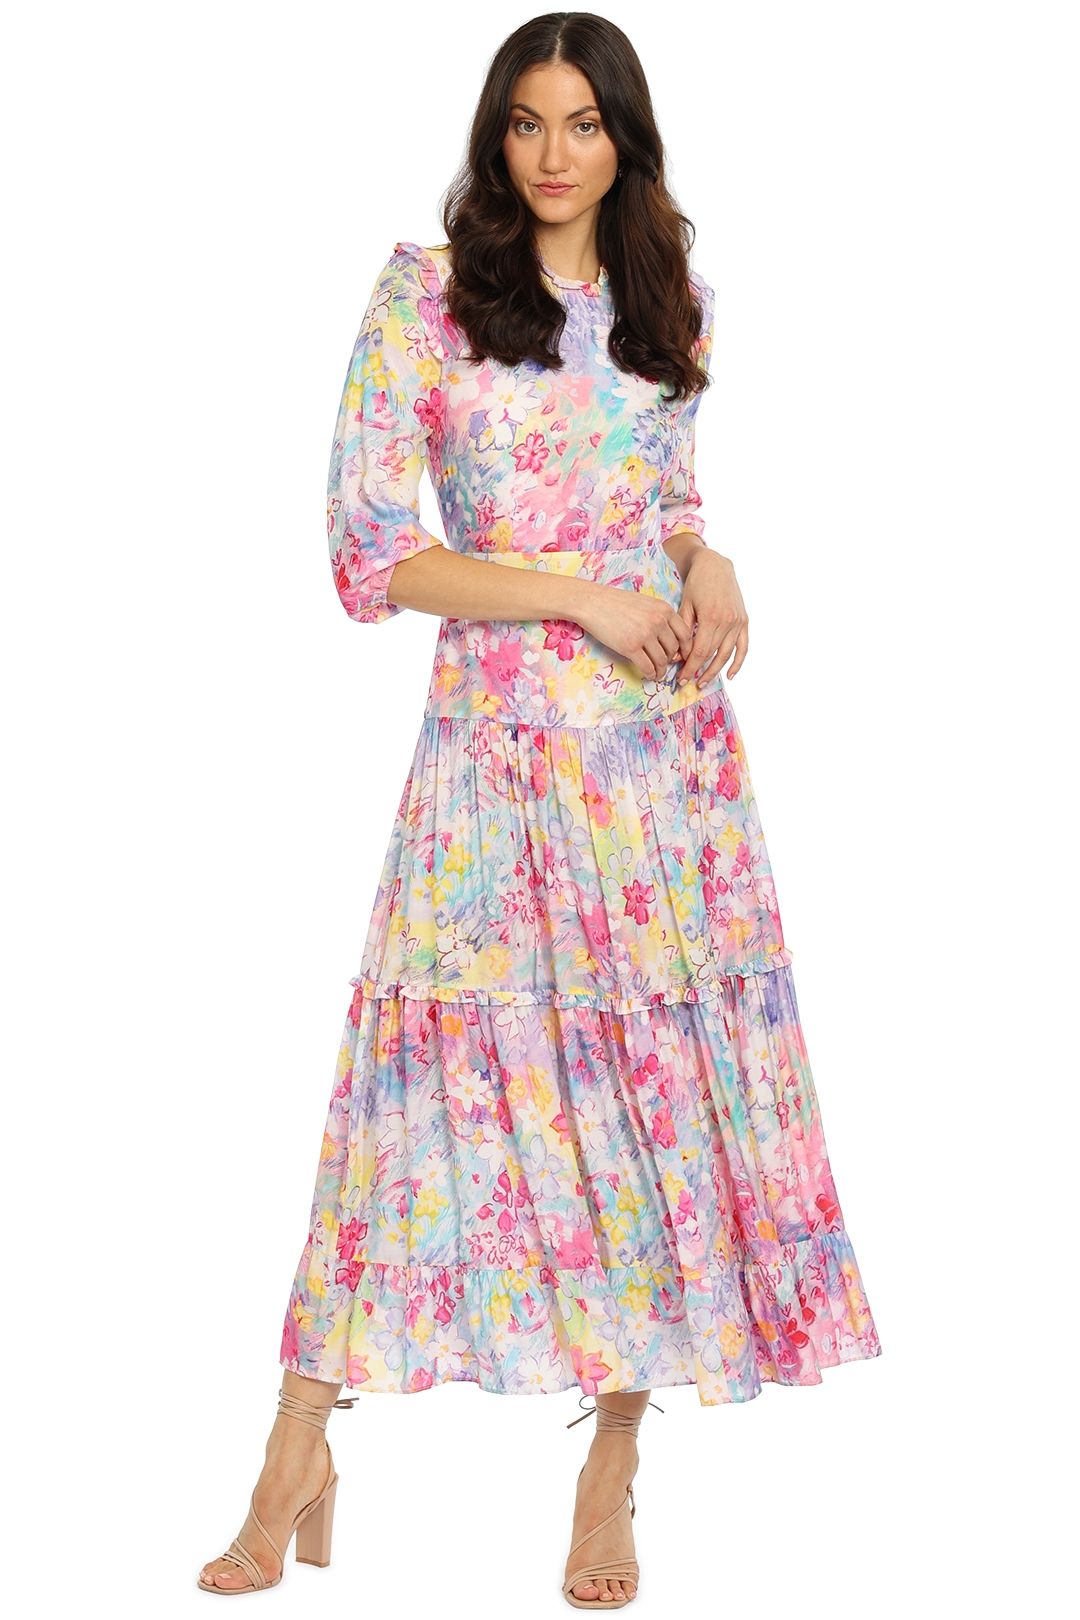 Rixo London Monet Dress Floral